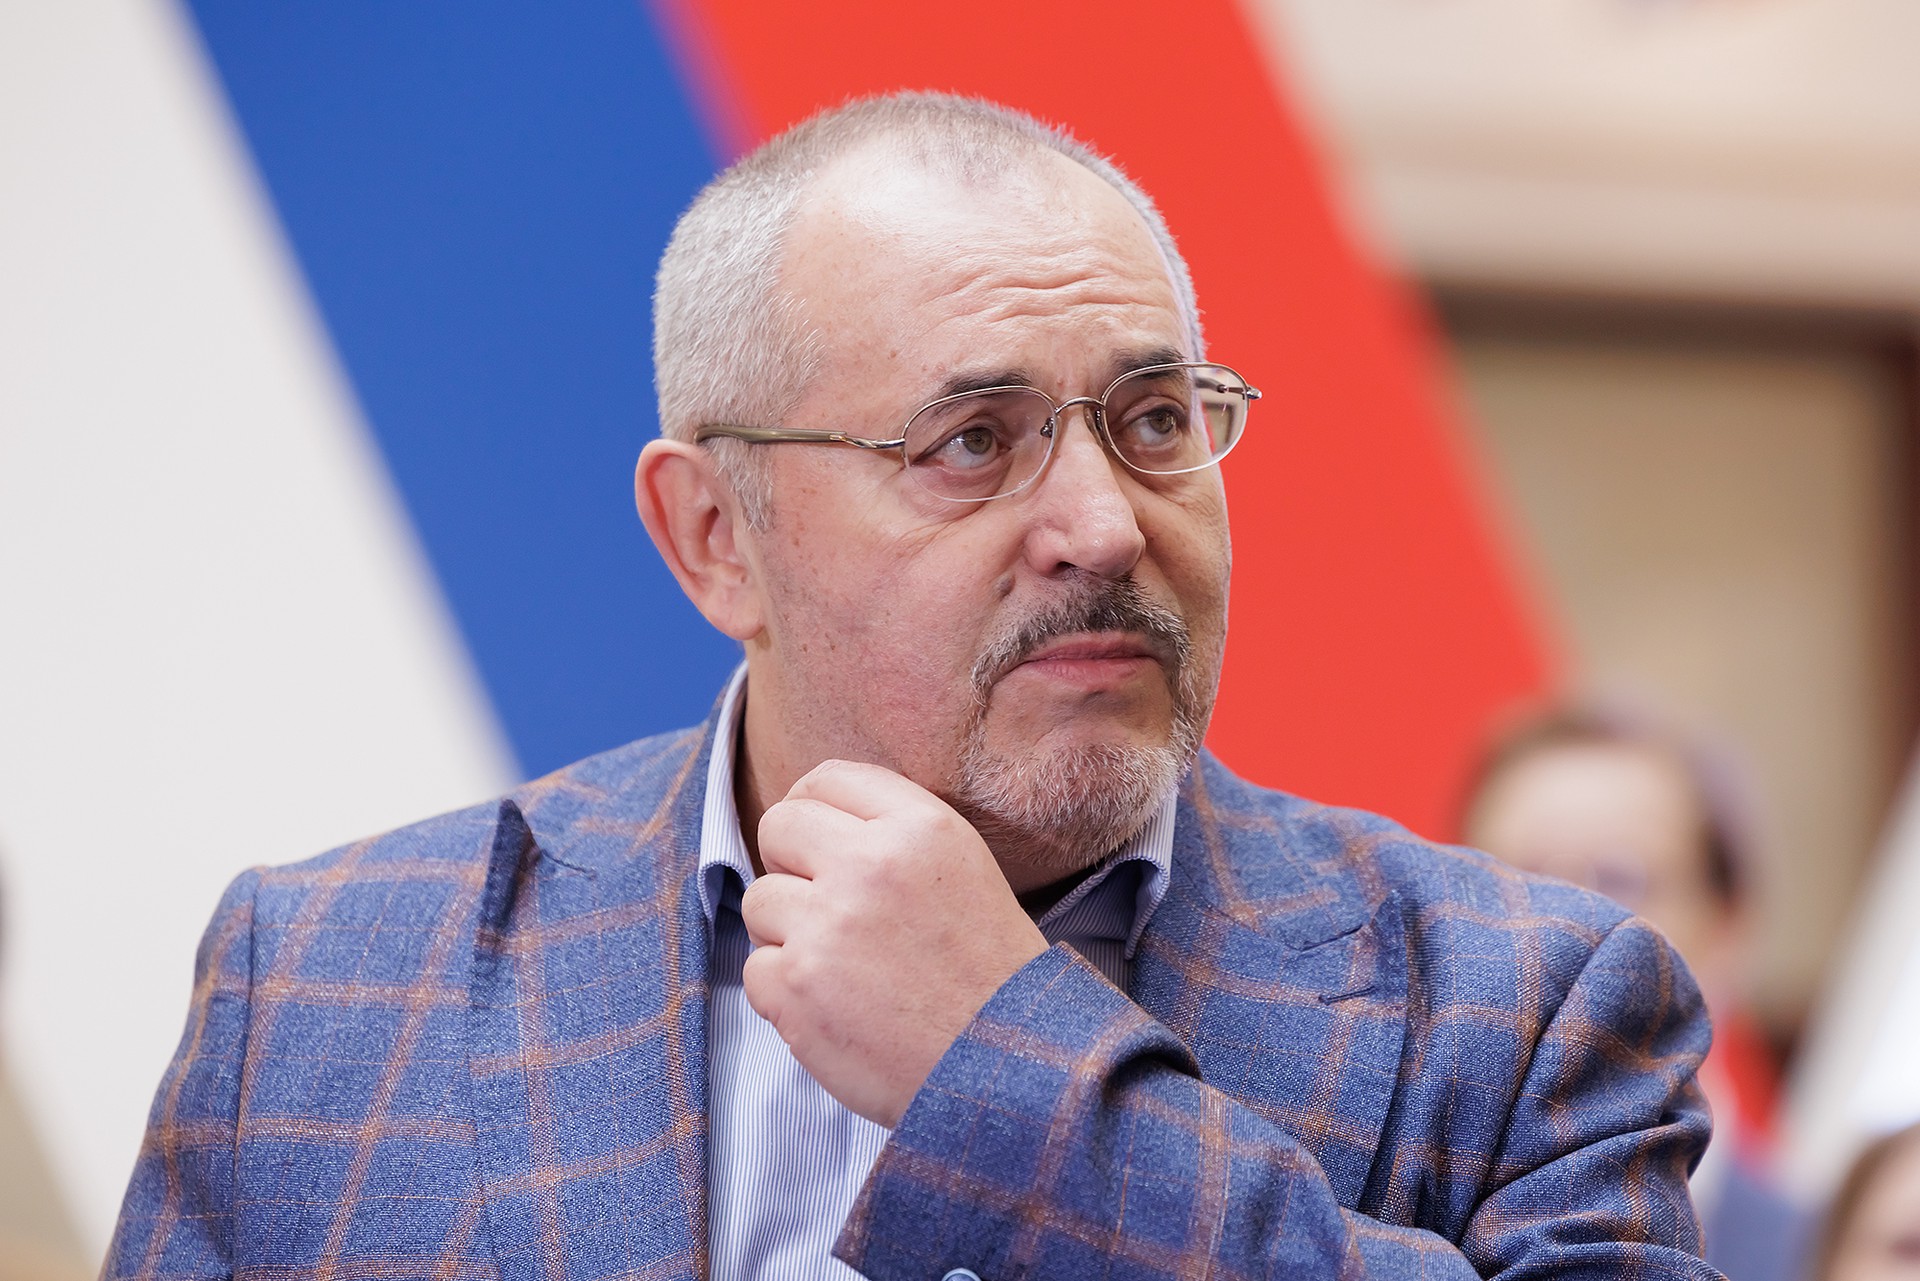 Борис Надеждин подал иск в Верховный суд из-за отказа ЦИК в регистрации